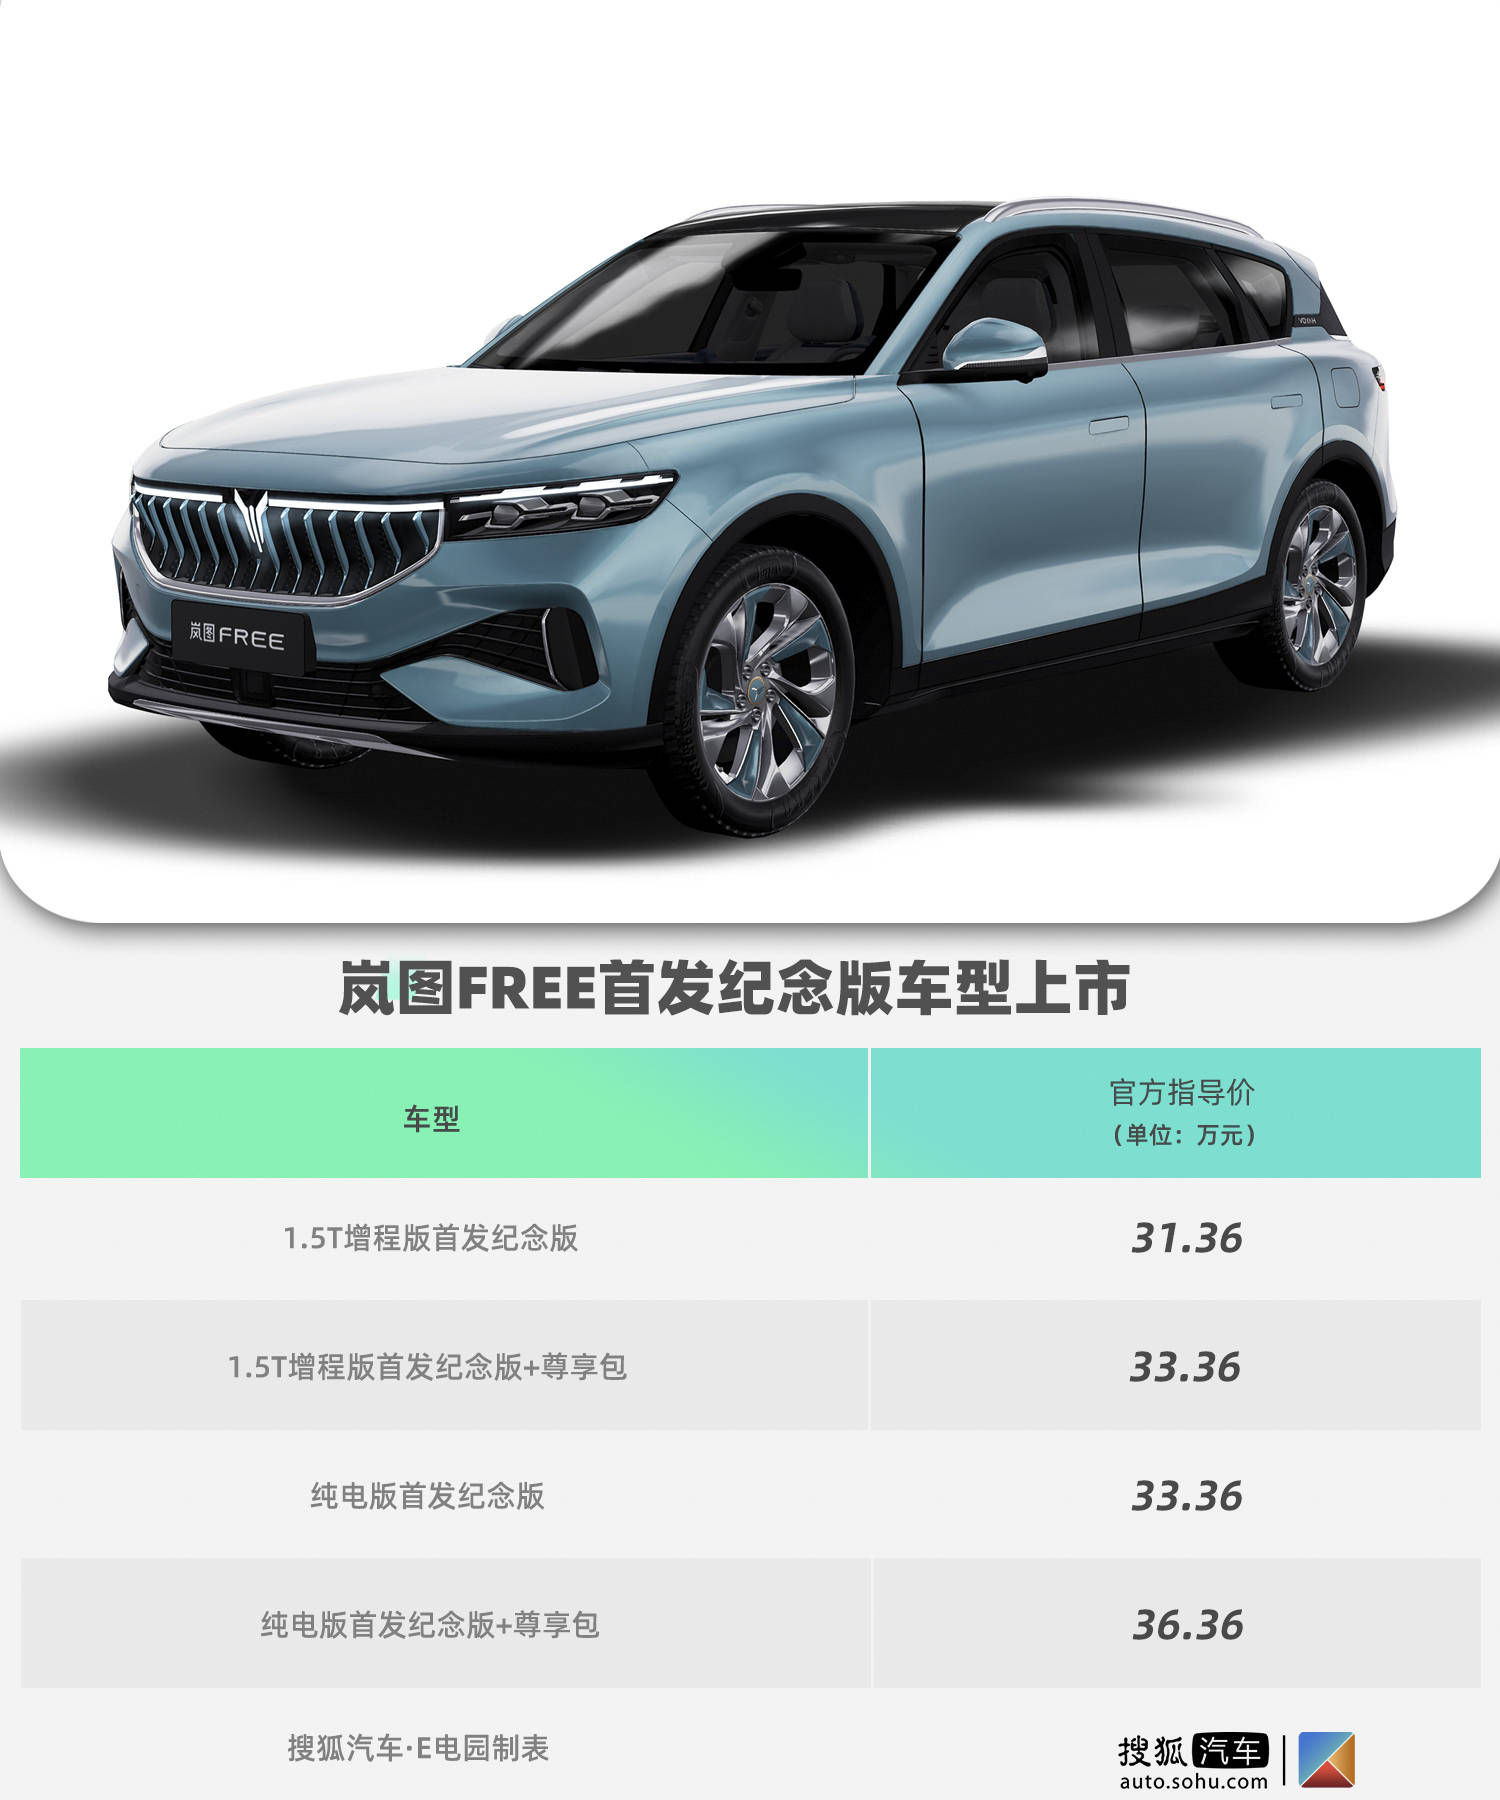 岚图free首发纪念版车型上市31 36万元起售 两种动力可选 三彩